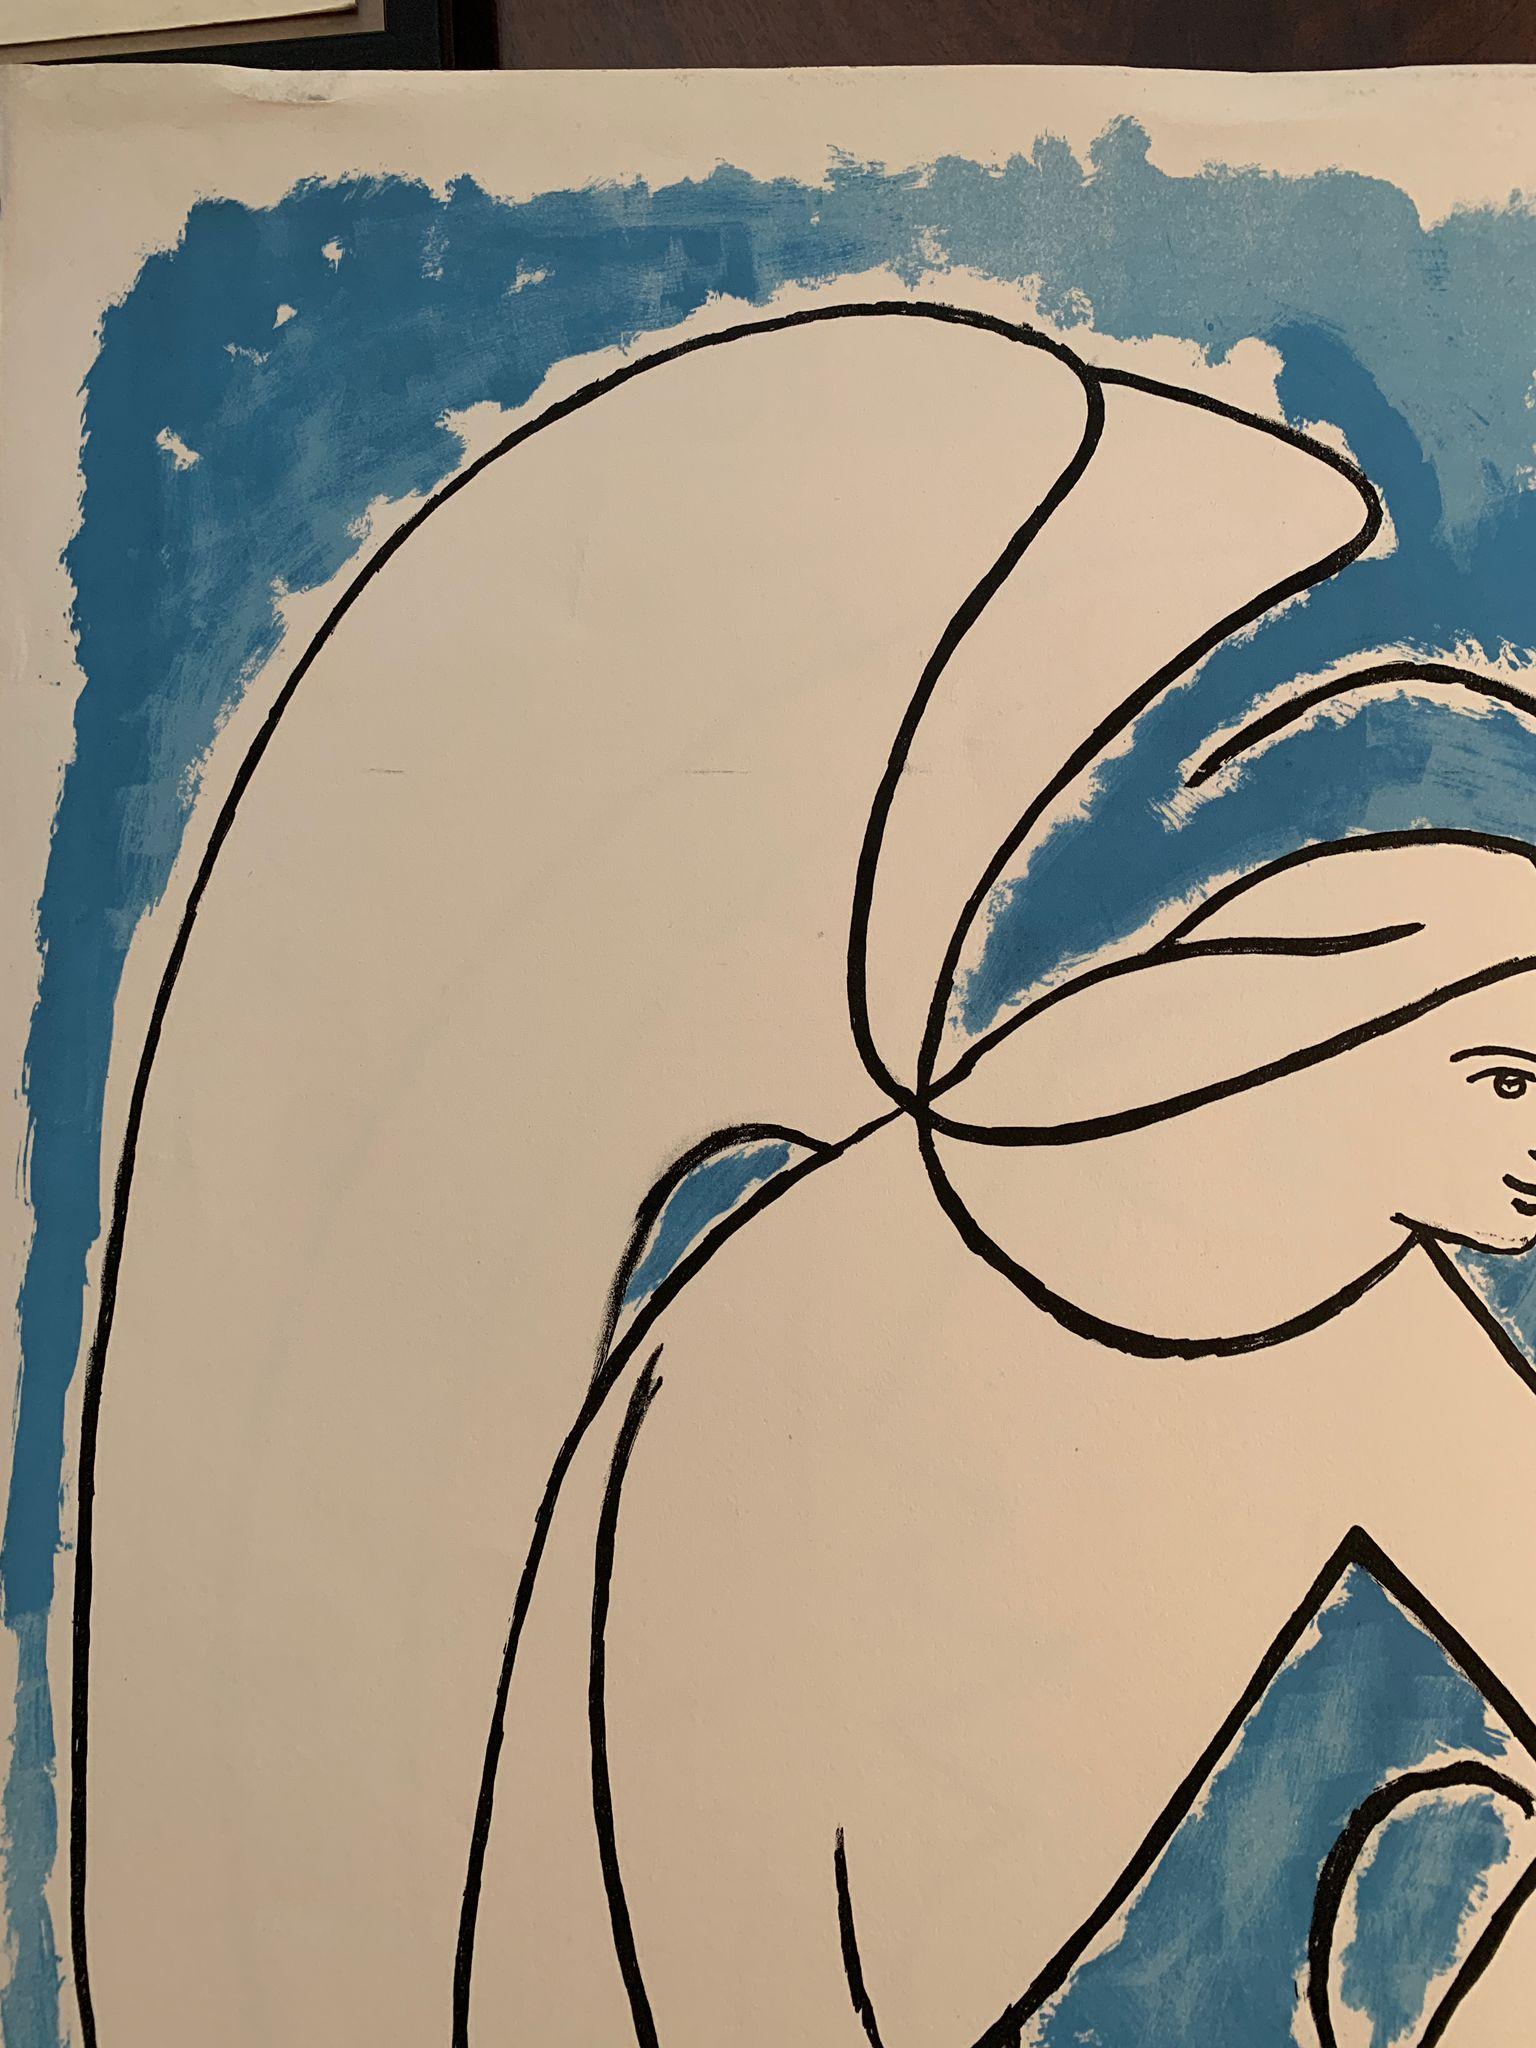 Ein ikonisches und originelles lithografisches Plakat von Jean Cocteau zur Feier der Chapelle St. Pierre in der südfranzösischen Stadt Villefranche-sur-Mer. Cocteau verbrachte mehrere Monate in dem kleinen mediterranen Küstendorf und malte im